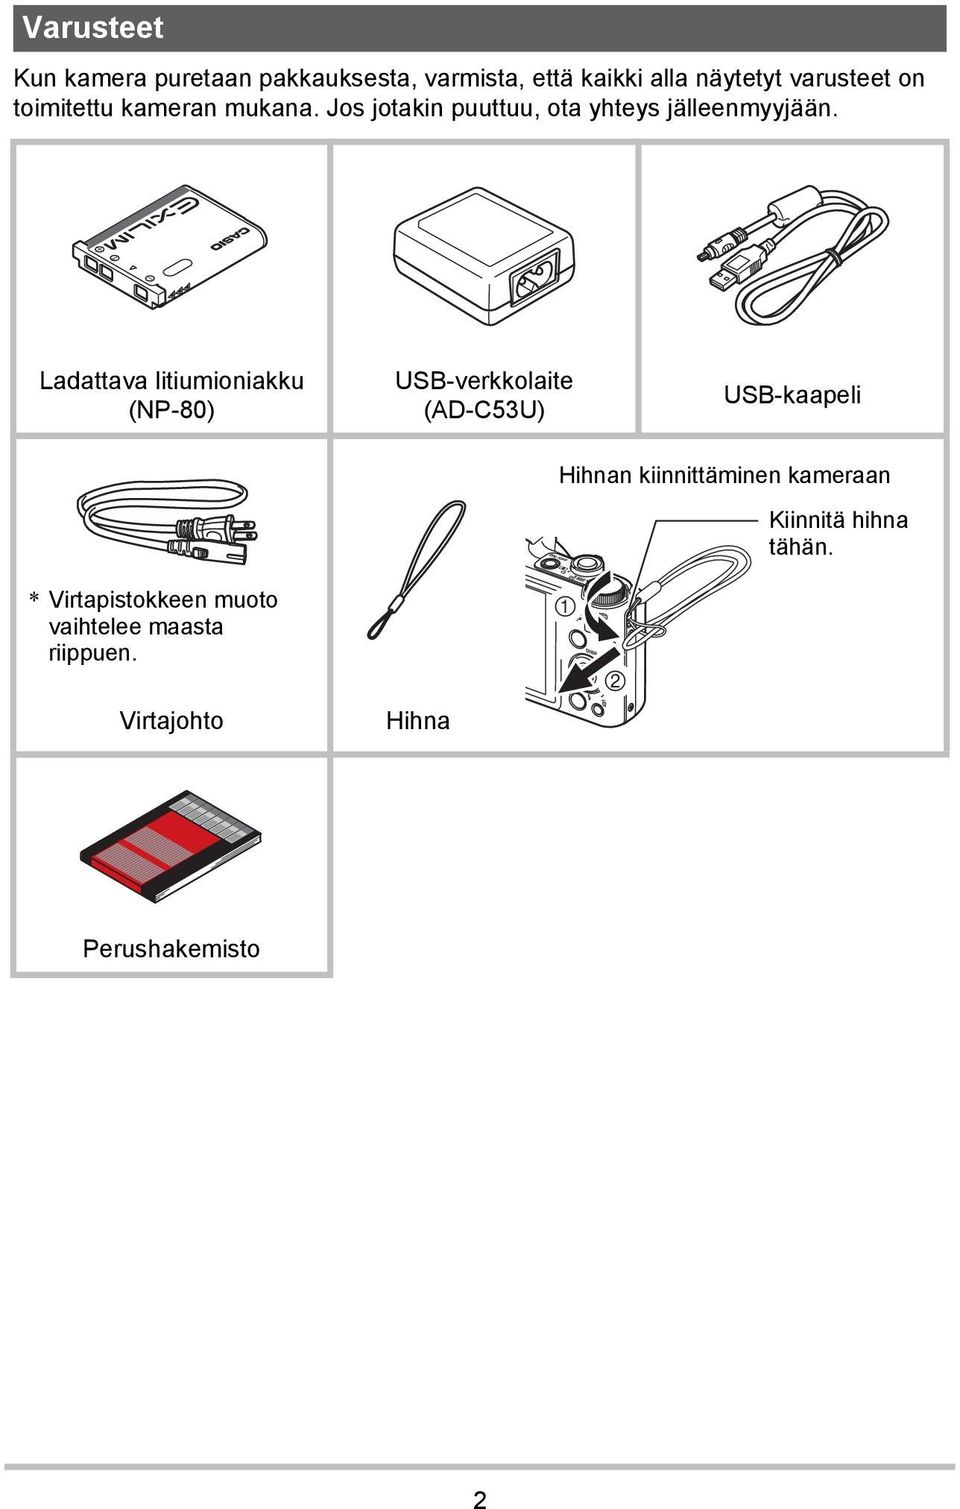 Ladattava litiumioniakku (NP-80) USB-verkkolaite (AD-C53U) USB-kaapeli Hihnan kiinnittäminen